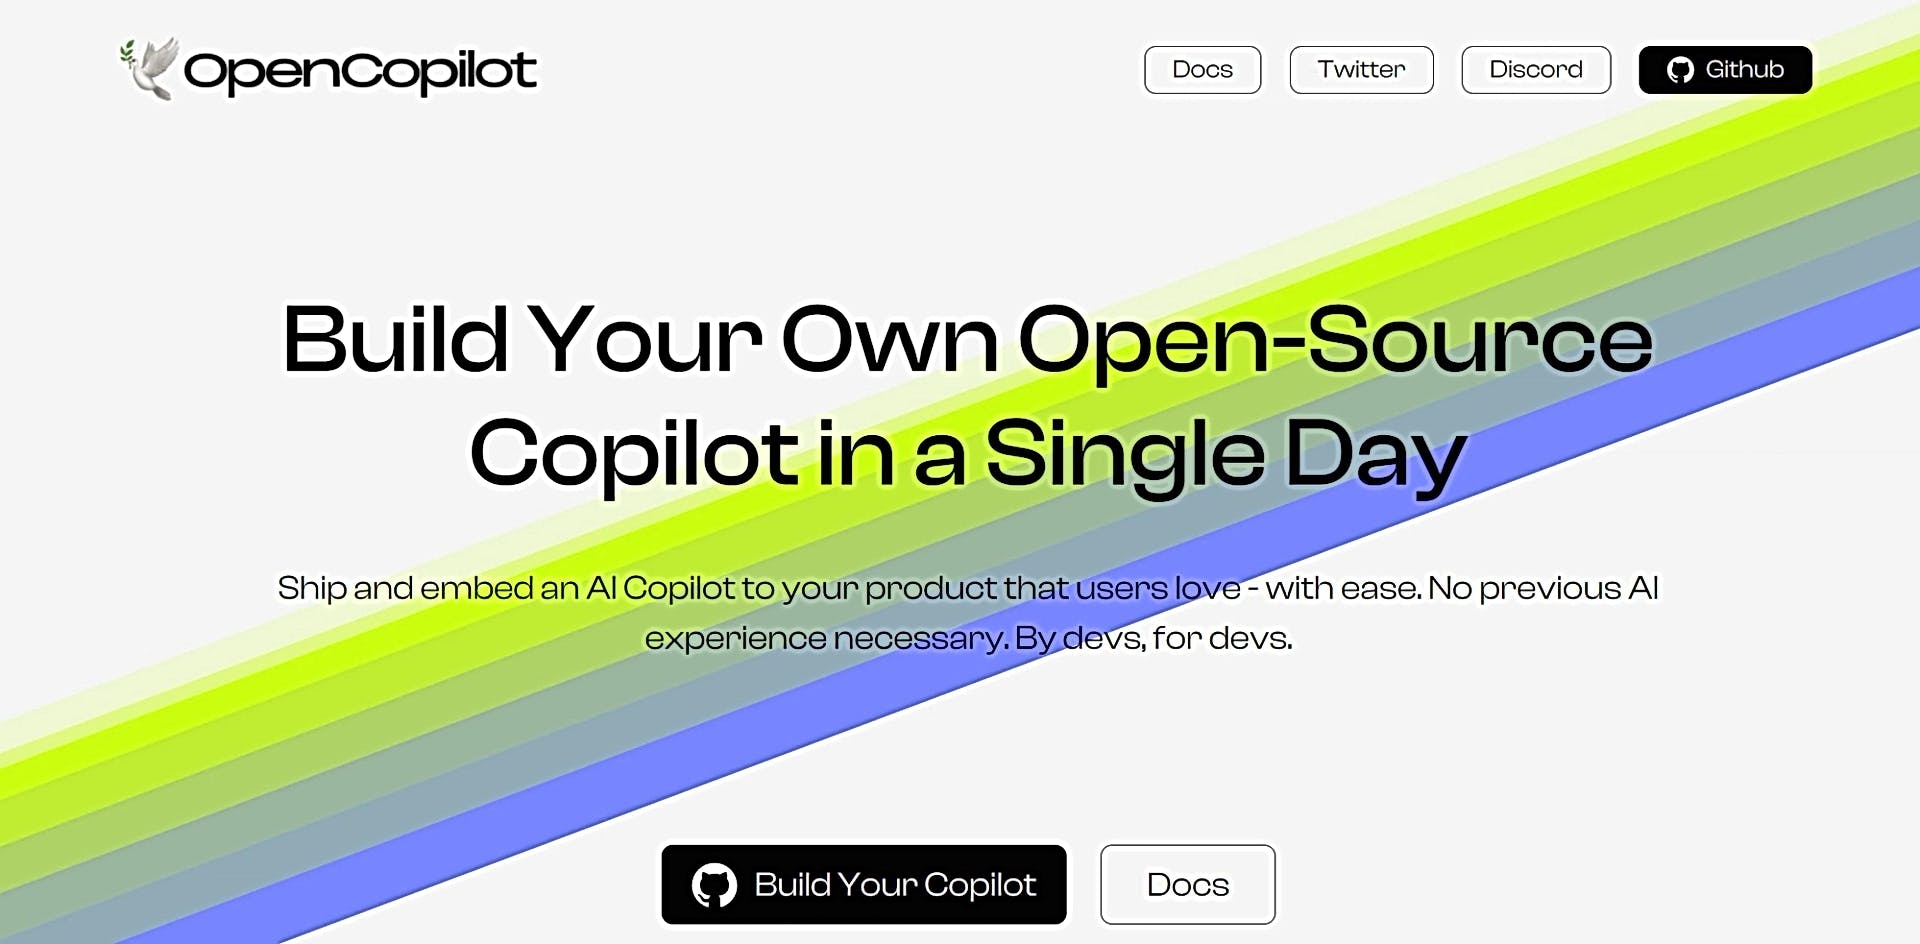 OpenCopilot featured